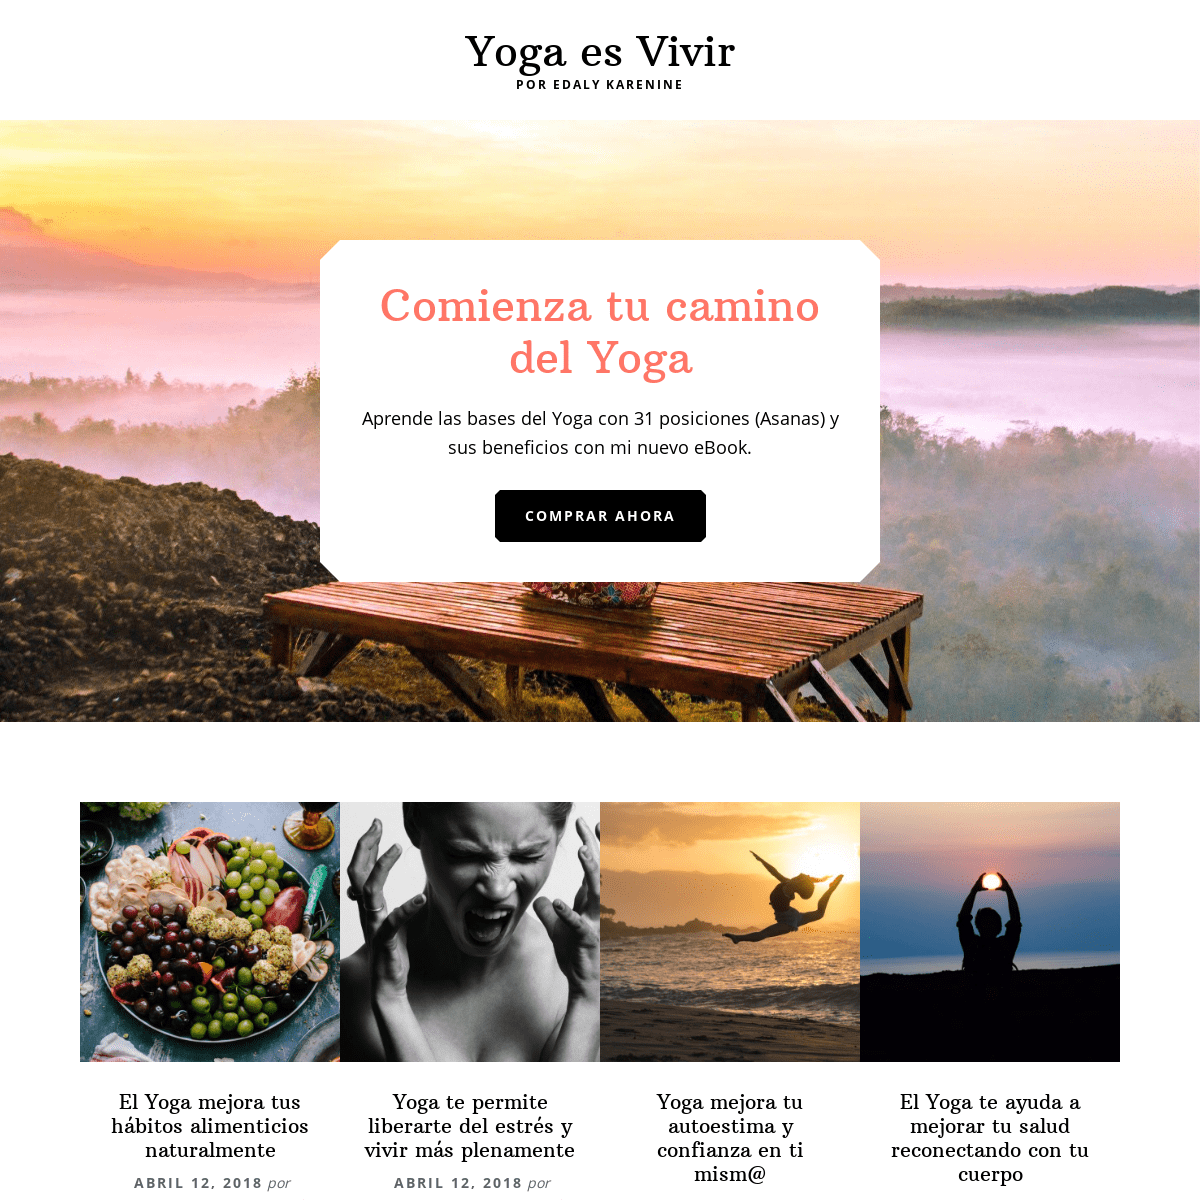 A complete backup of yogaesvivir.com